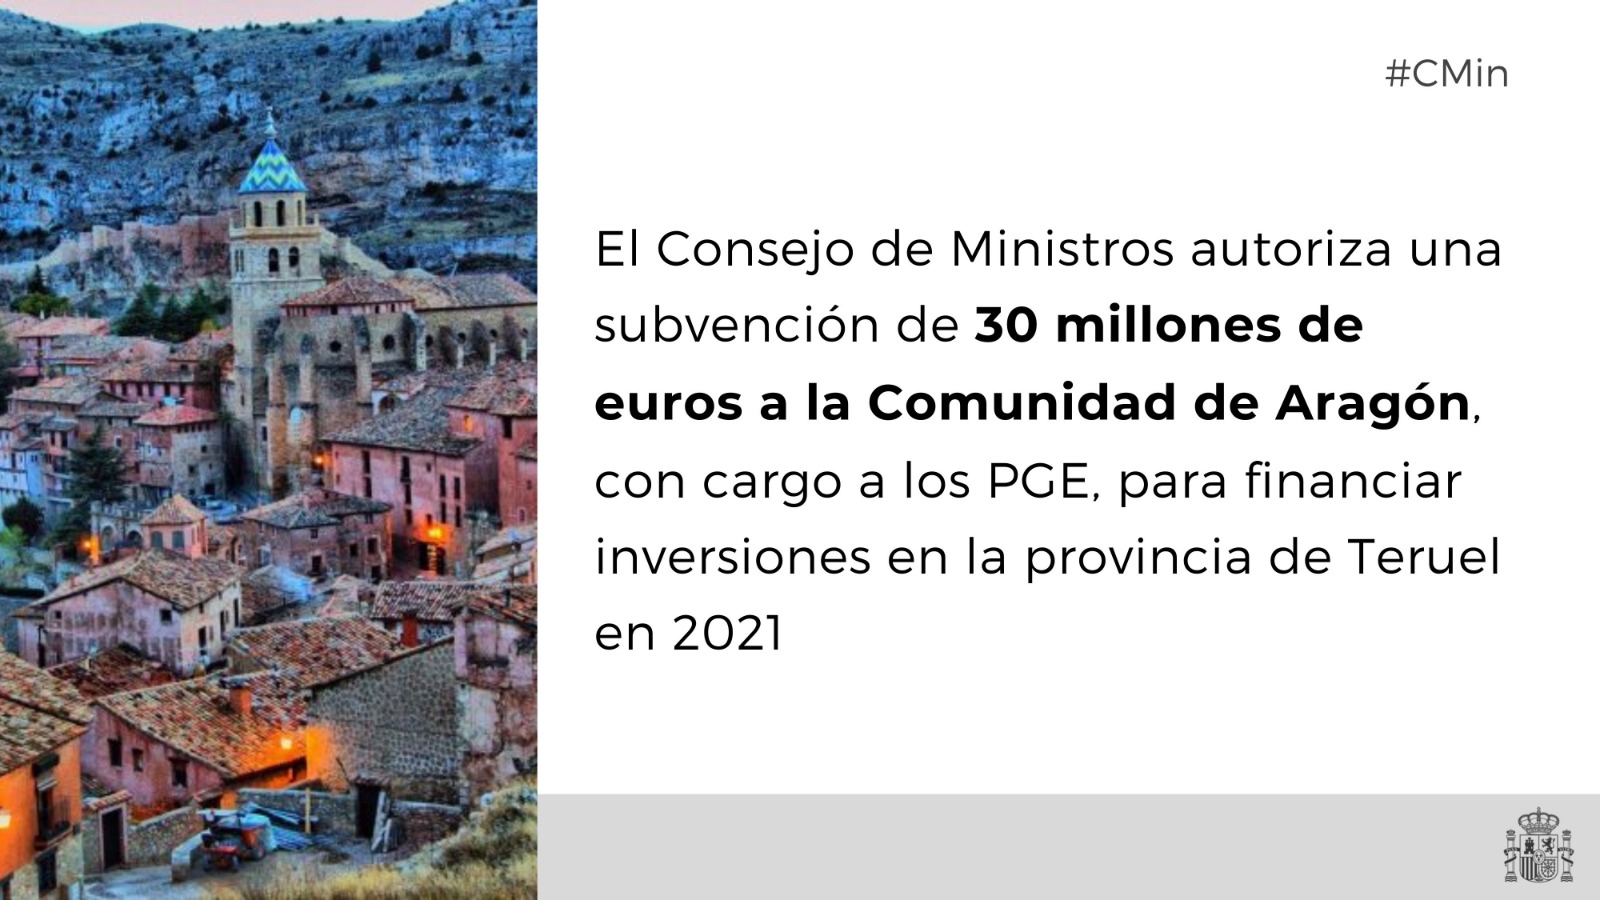 Subvención de 30 millones de euros a la Comunidad Autónoma de Aragón para financiar inversiones en la provincia de Teruel en 2021<br/><br/>